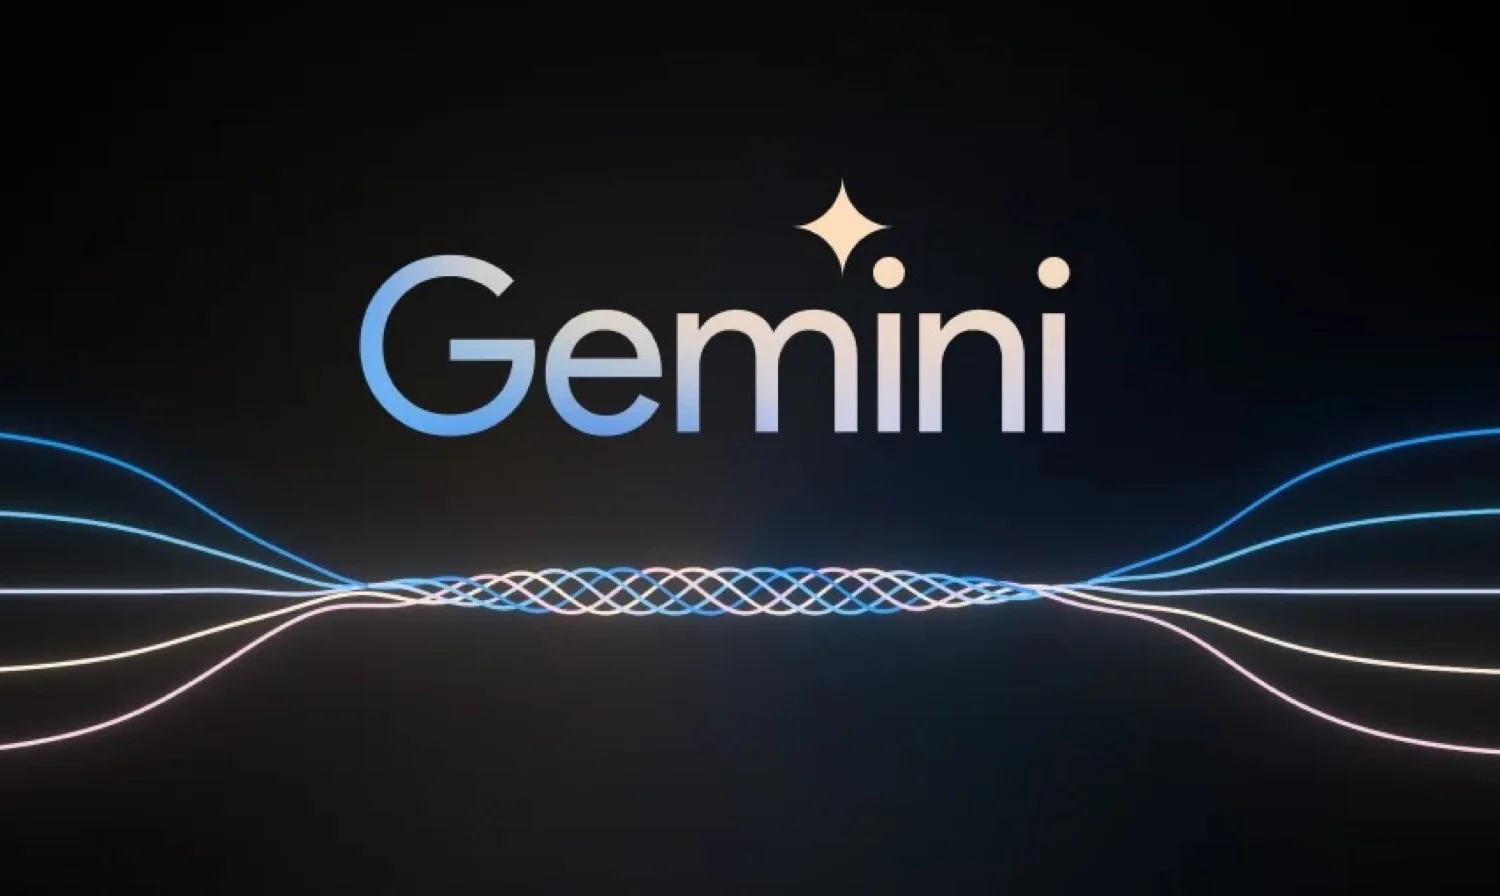 Google presentó Gemini, su modelo de IA más avanzado